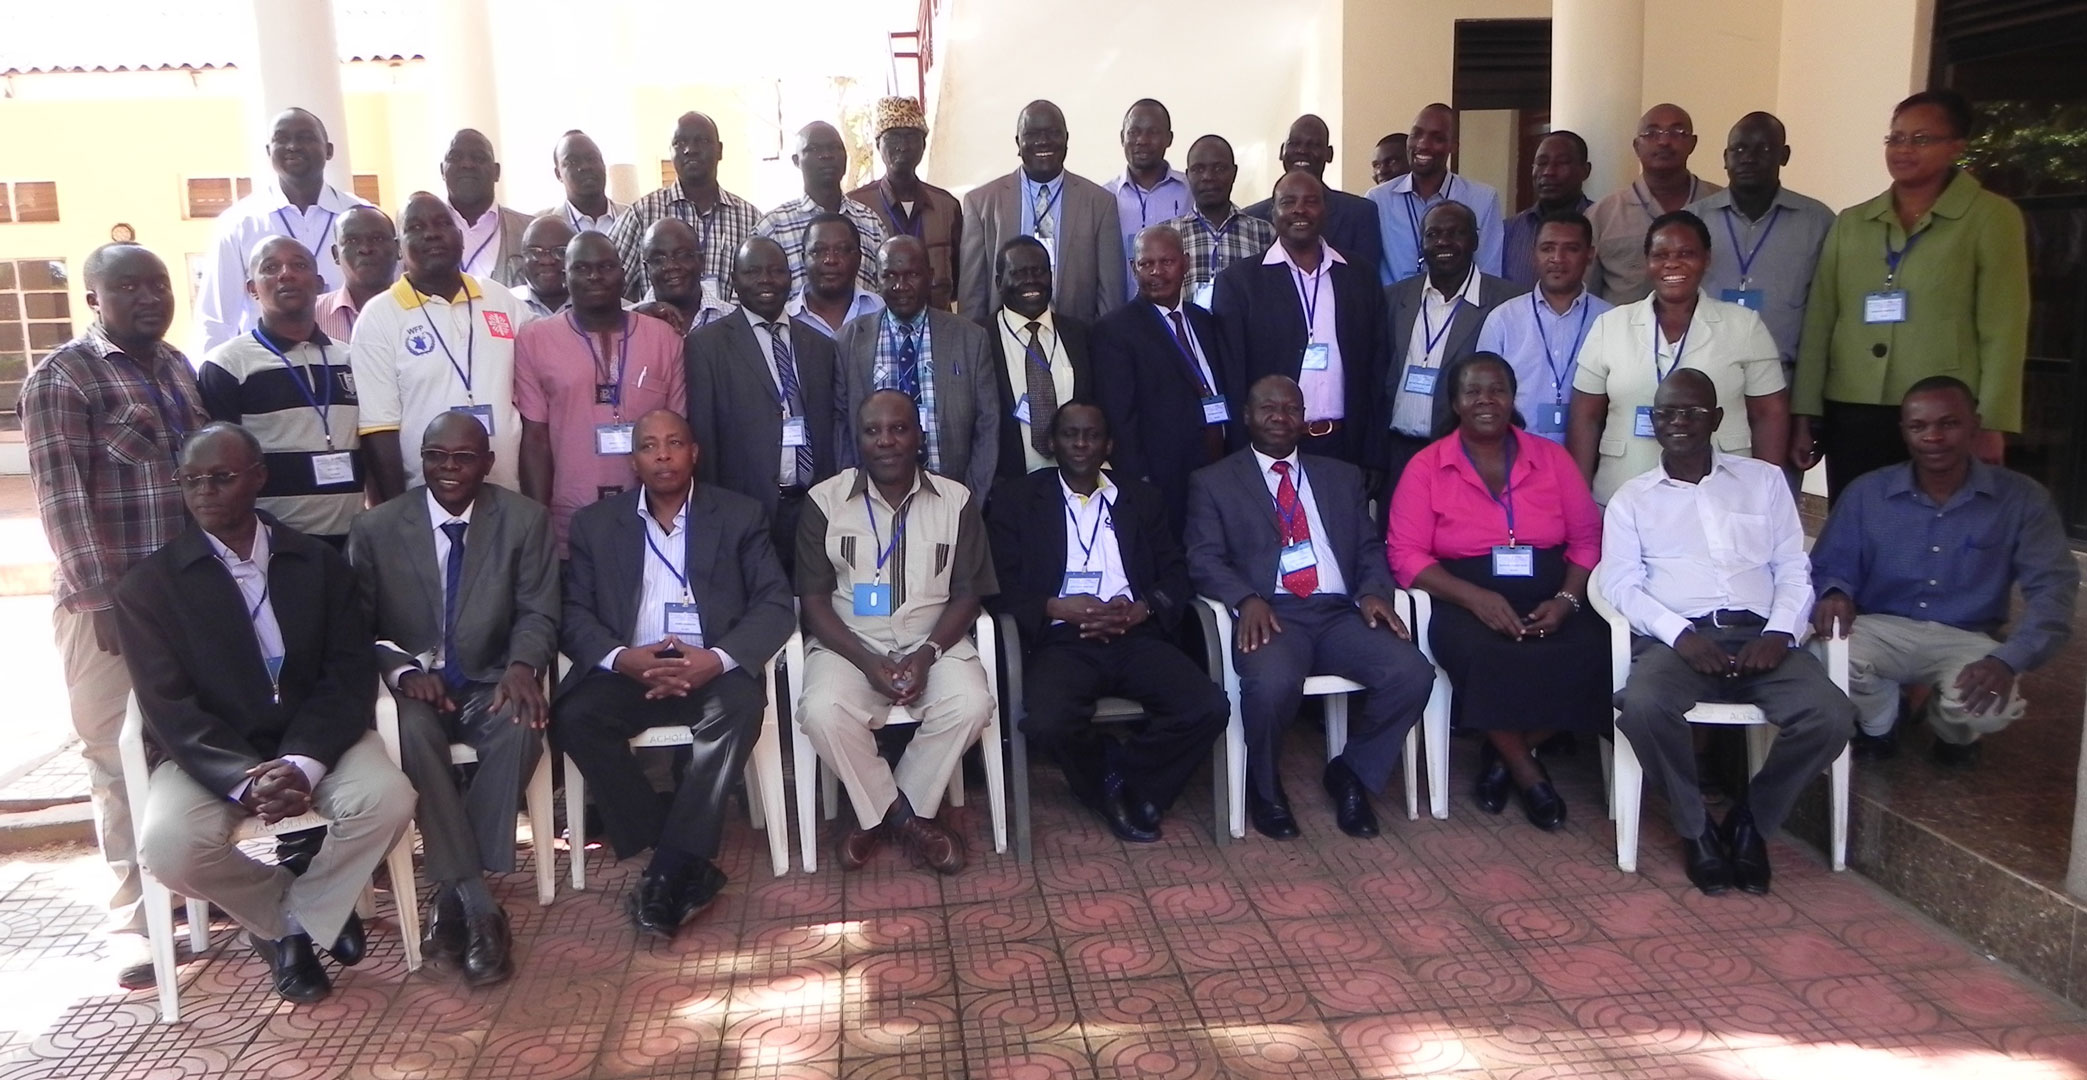 © 2014 AU-IBAR. Participants at the SMP-AH Cross-border Meeting for Ethiopia, South Sudan, Kenya and Uganda held in Gulu, Uganda, 11th-13th November 2014